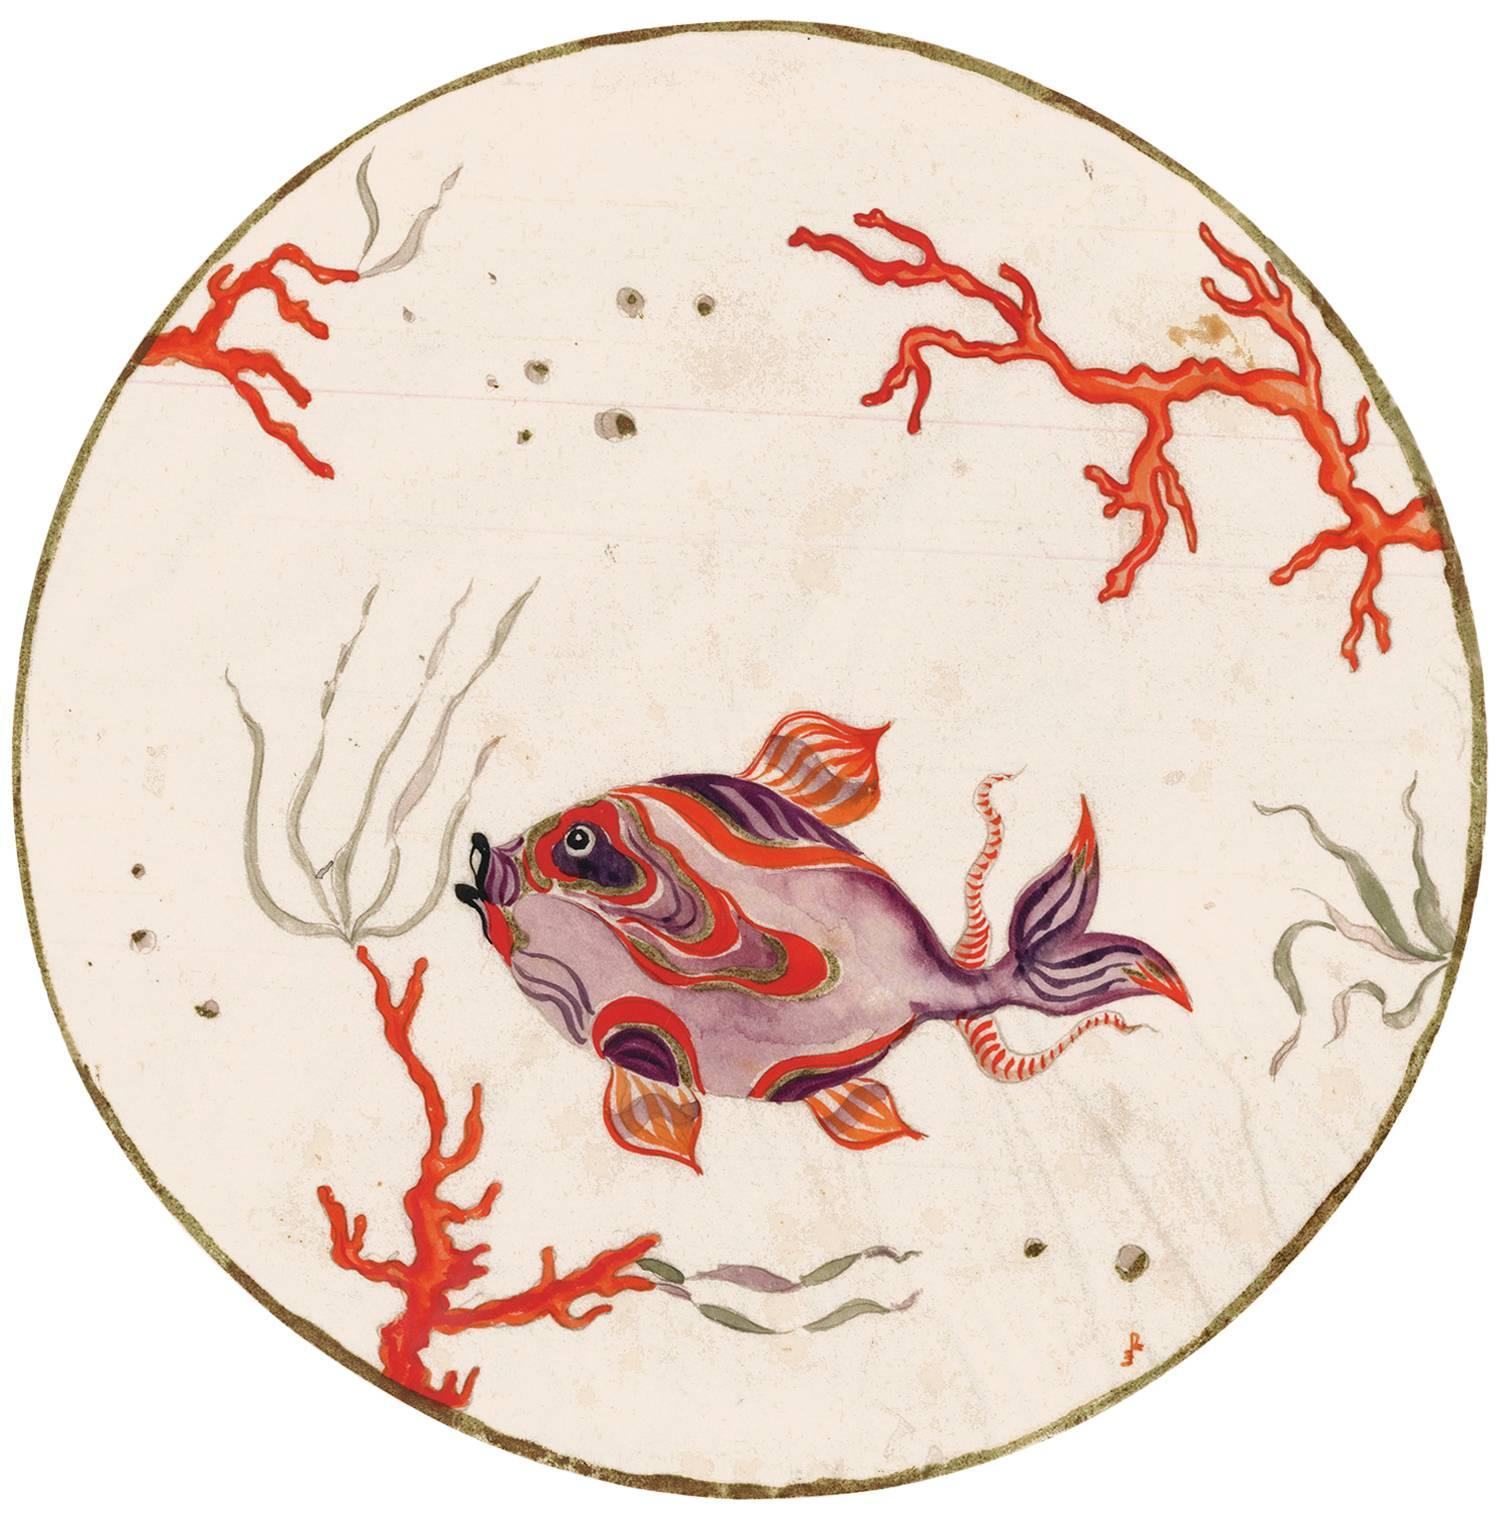 Original-Gouache eines Fisches und einer Koralle von der Künstlerin der Wiener Werkstätte, Ena Rottenberg. Signiert mit ihren Initialen am unteren rechten Rand des Bildes. Wahrscheinlich ein Entwurf für einen Porzellanteller. Rottenberg (1893-1962)